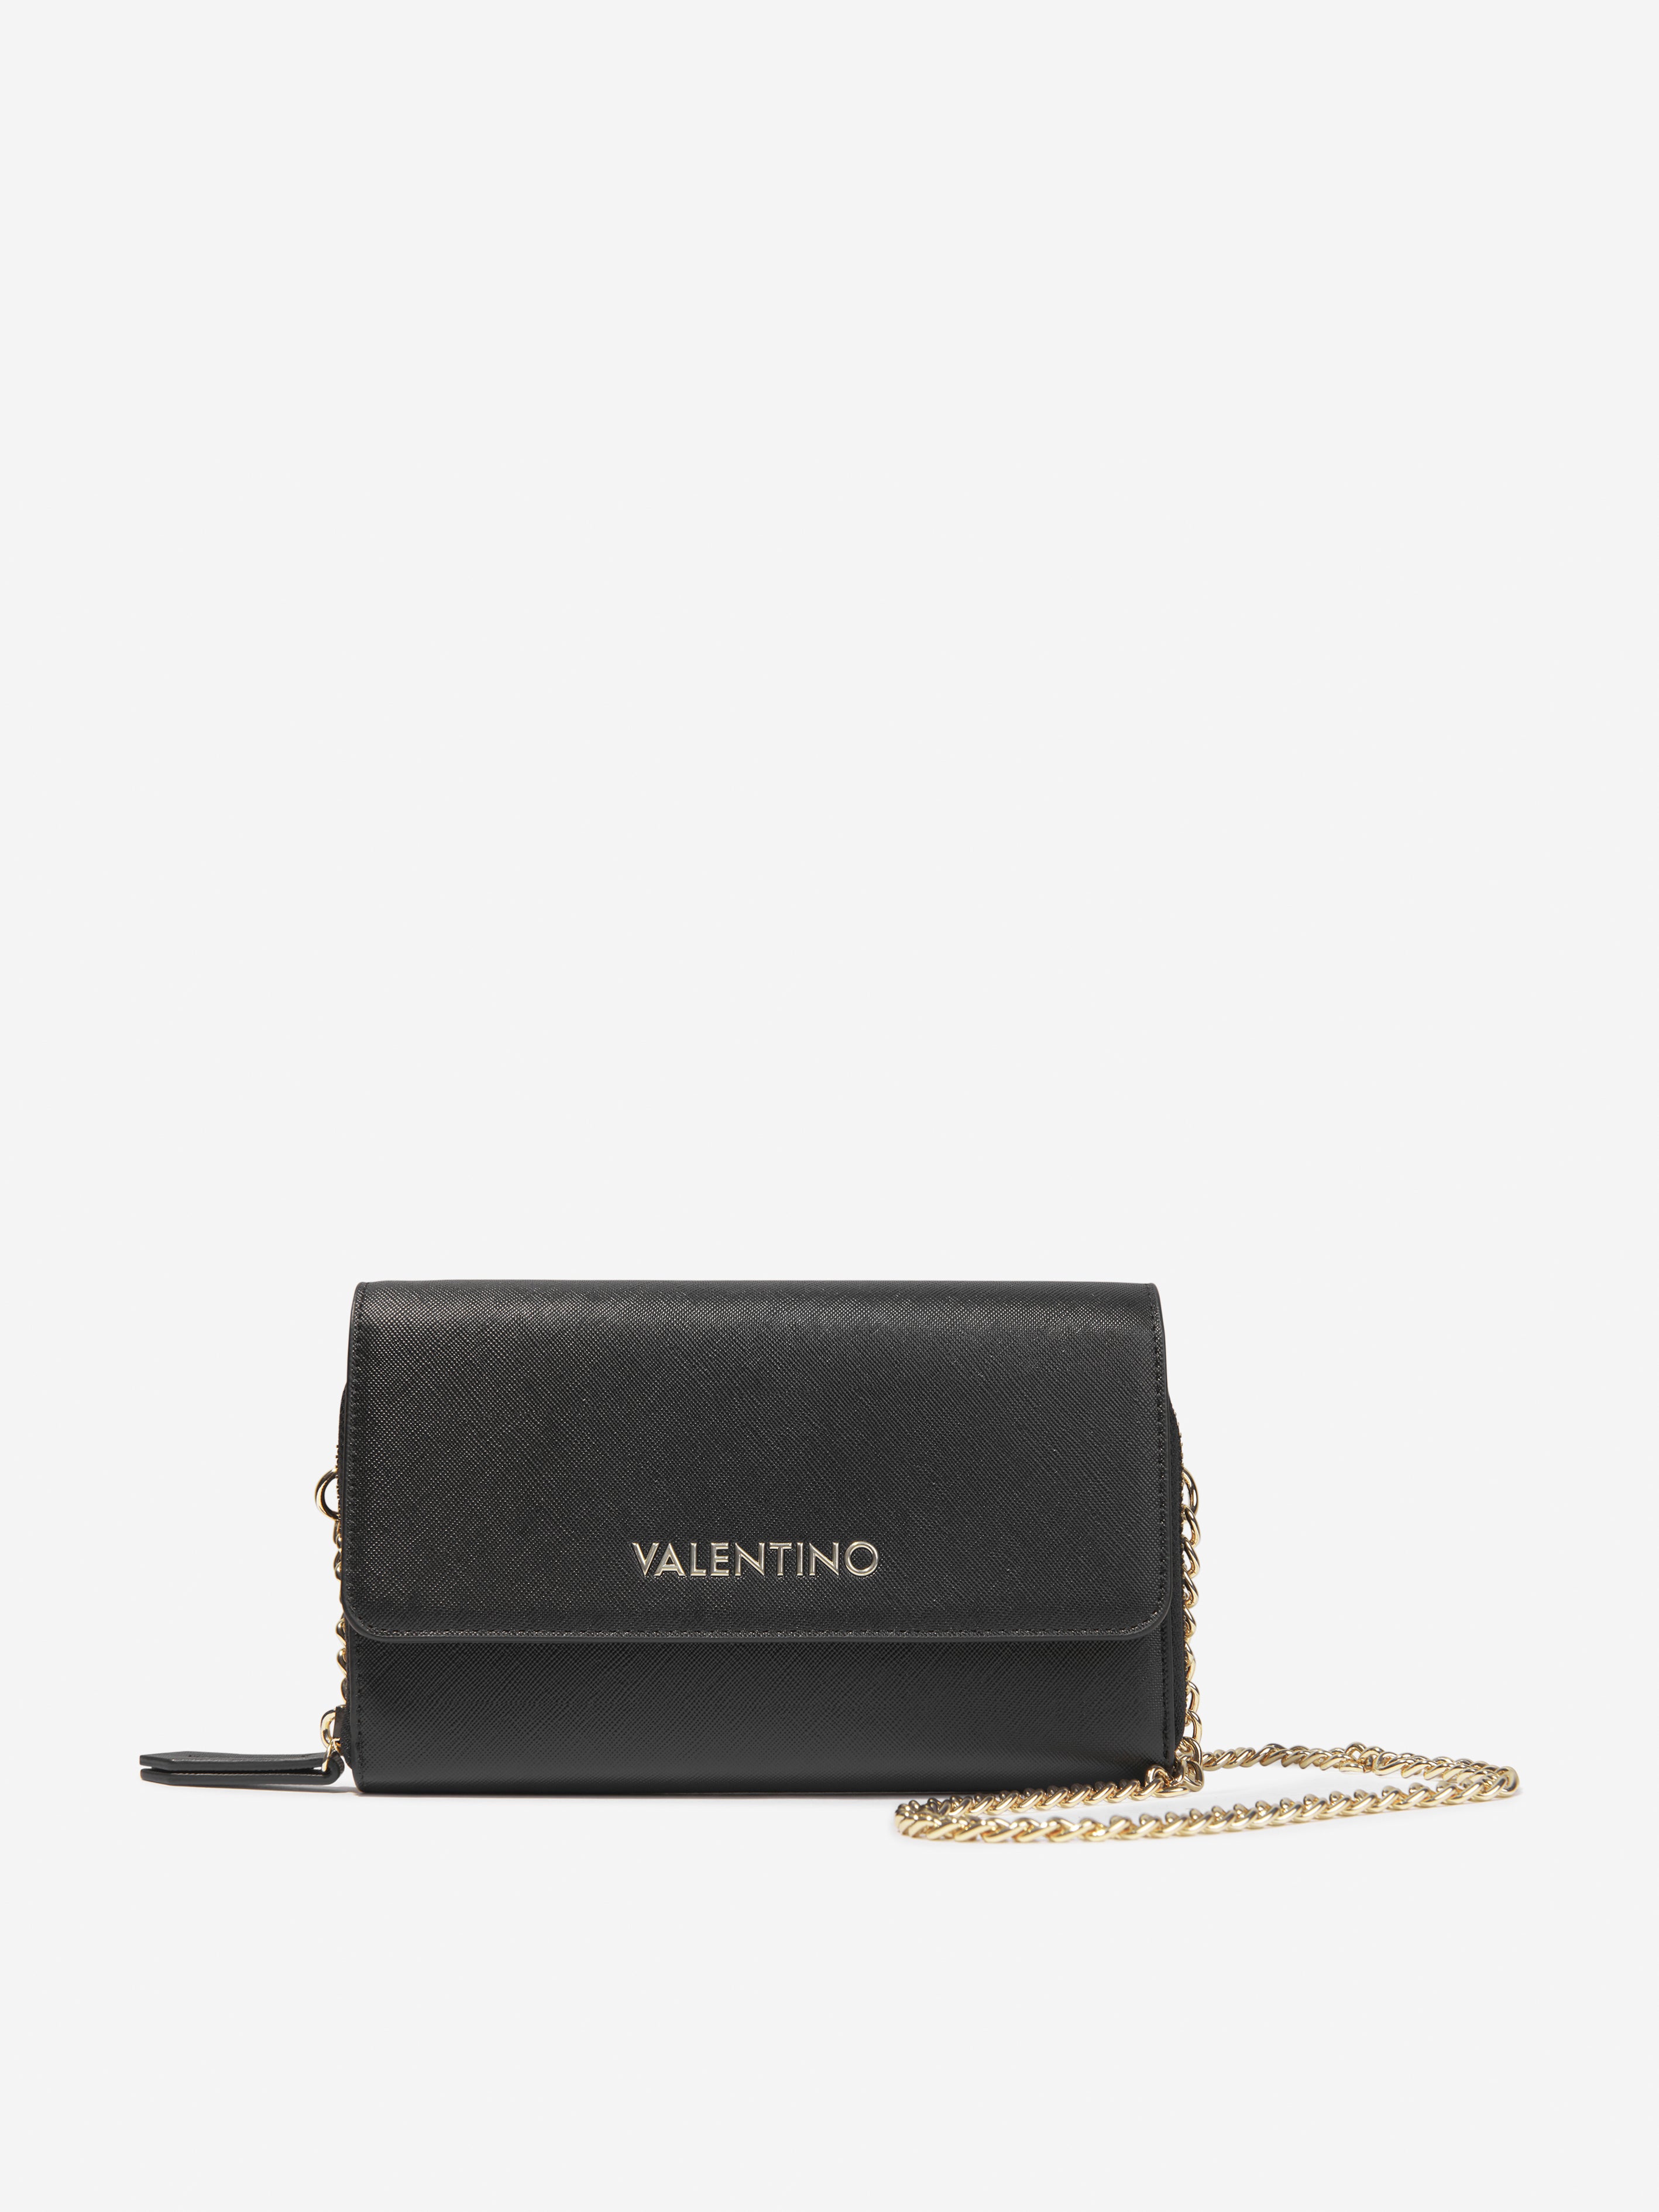 Girls Zero Wallet With Shoulder Strap in Black (W: 2.5cm